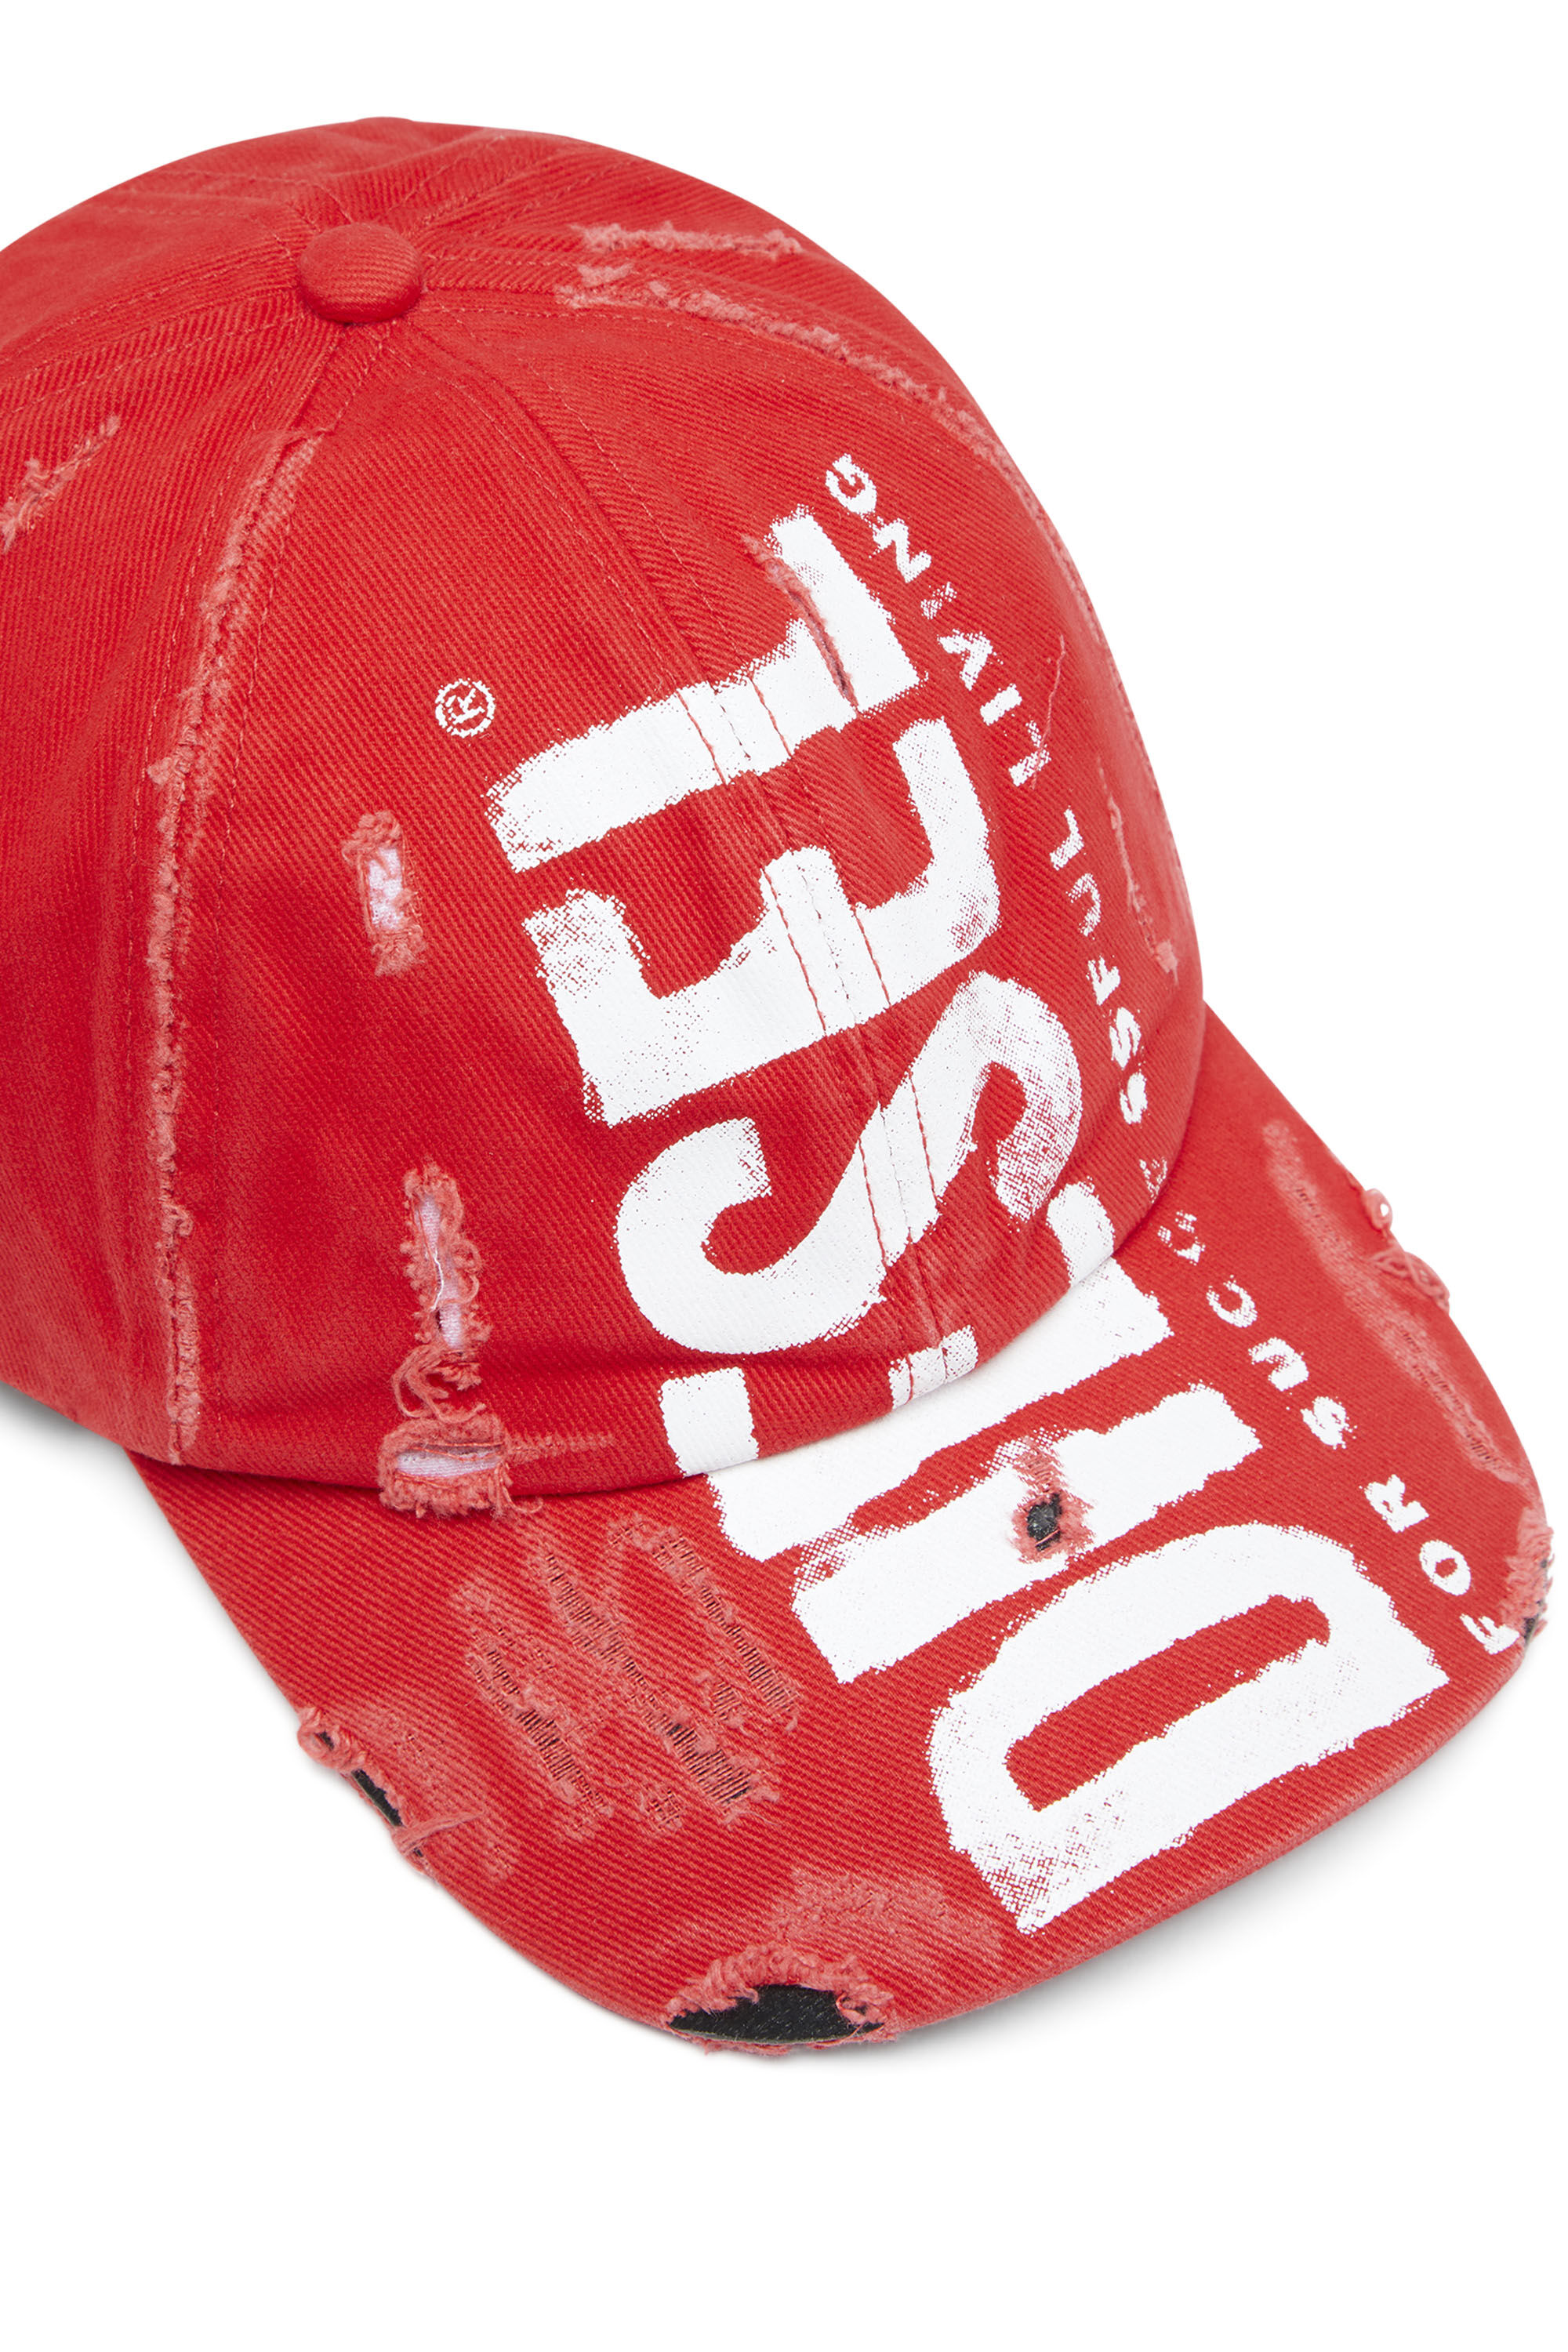 【新品】DIESEL ディーゼル C-Seymon デニム ロゴ キャップ 帽子メンズ